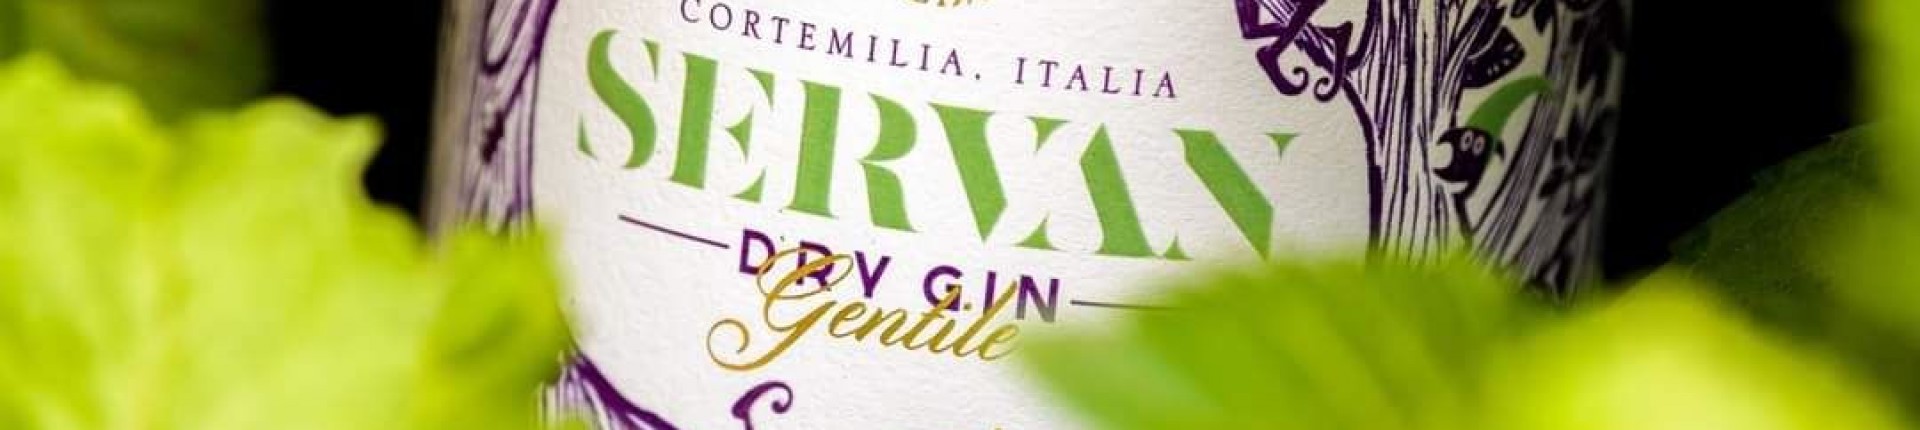 servan gin -  - Valverde Liquori e Grappe artigianali - Distilleria in Cortemilia (CN) - Italia 